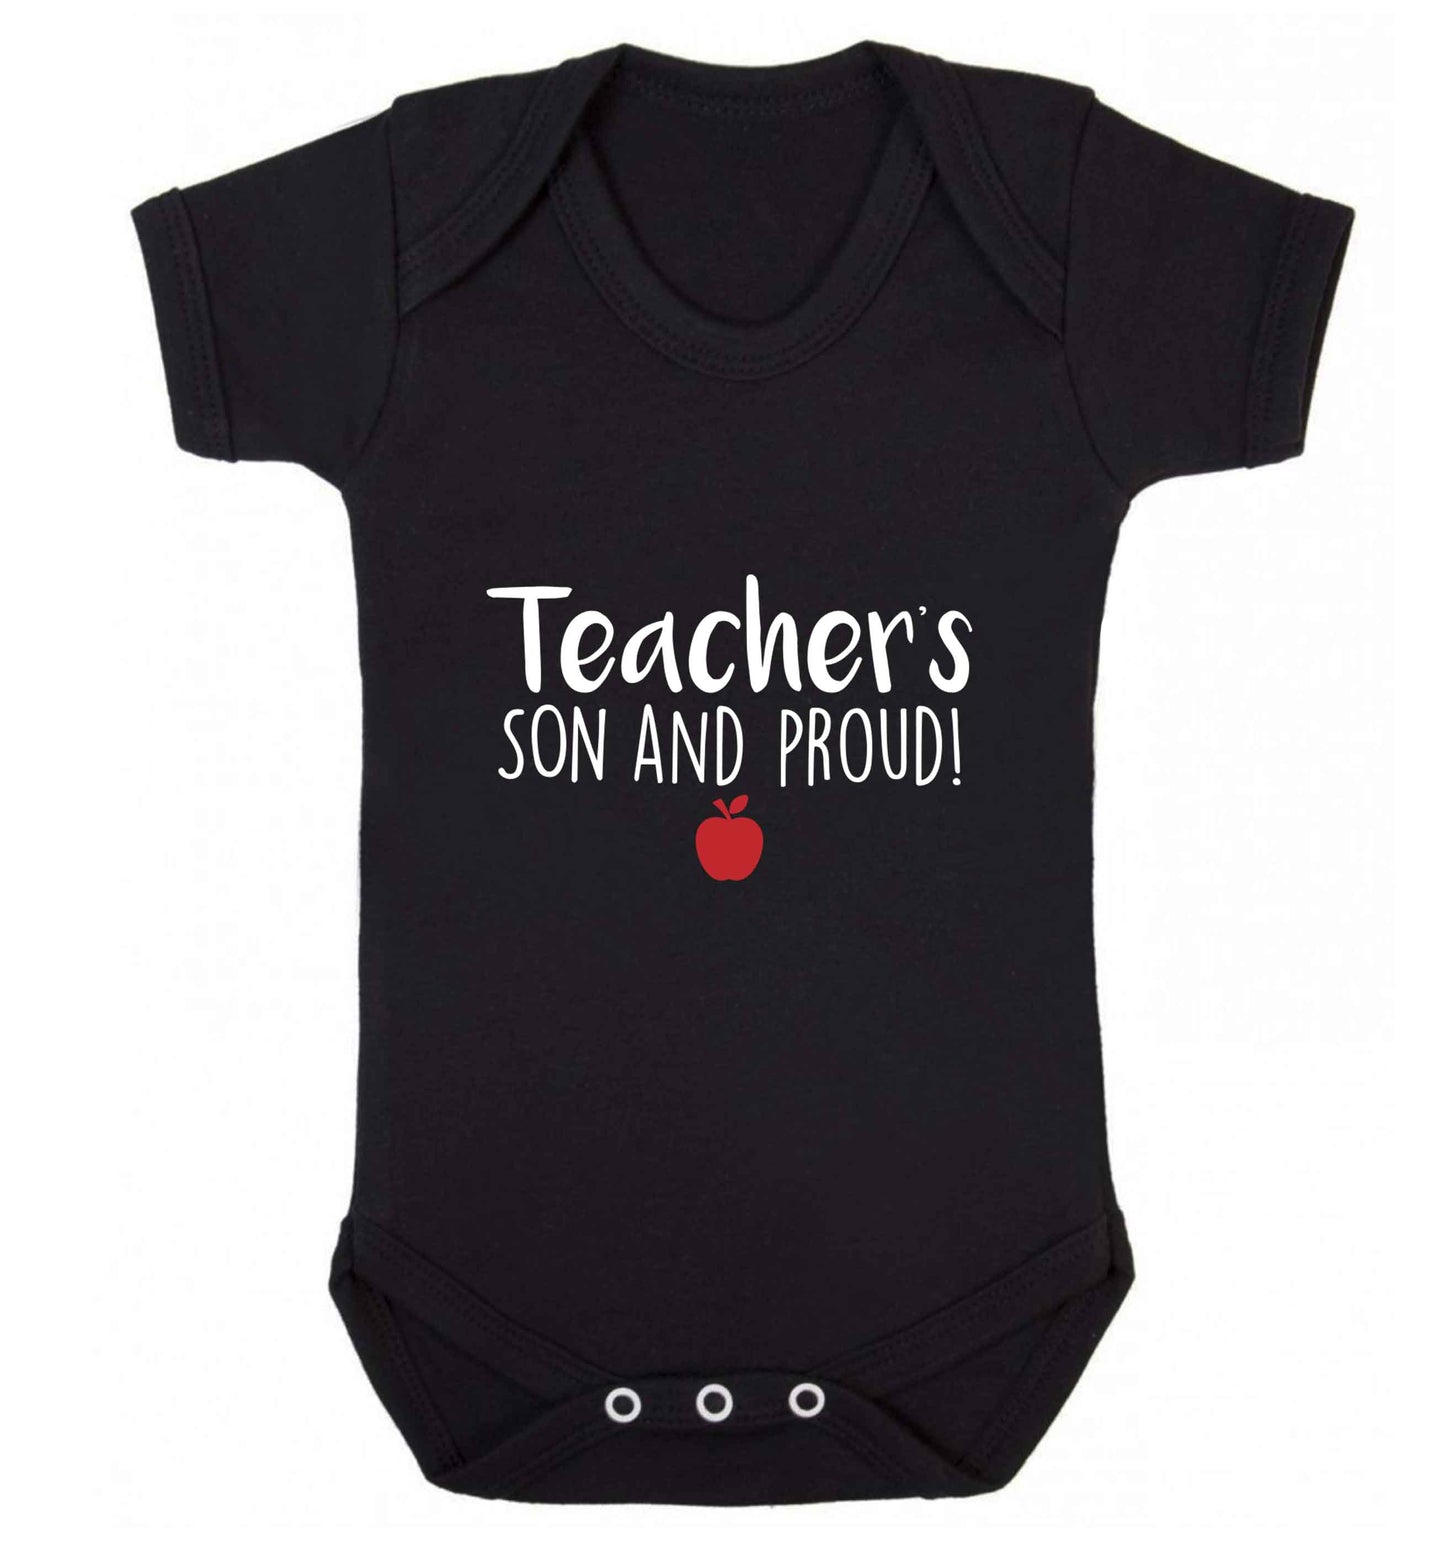 Teachers son and proud baby vest black 18-24 months